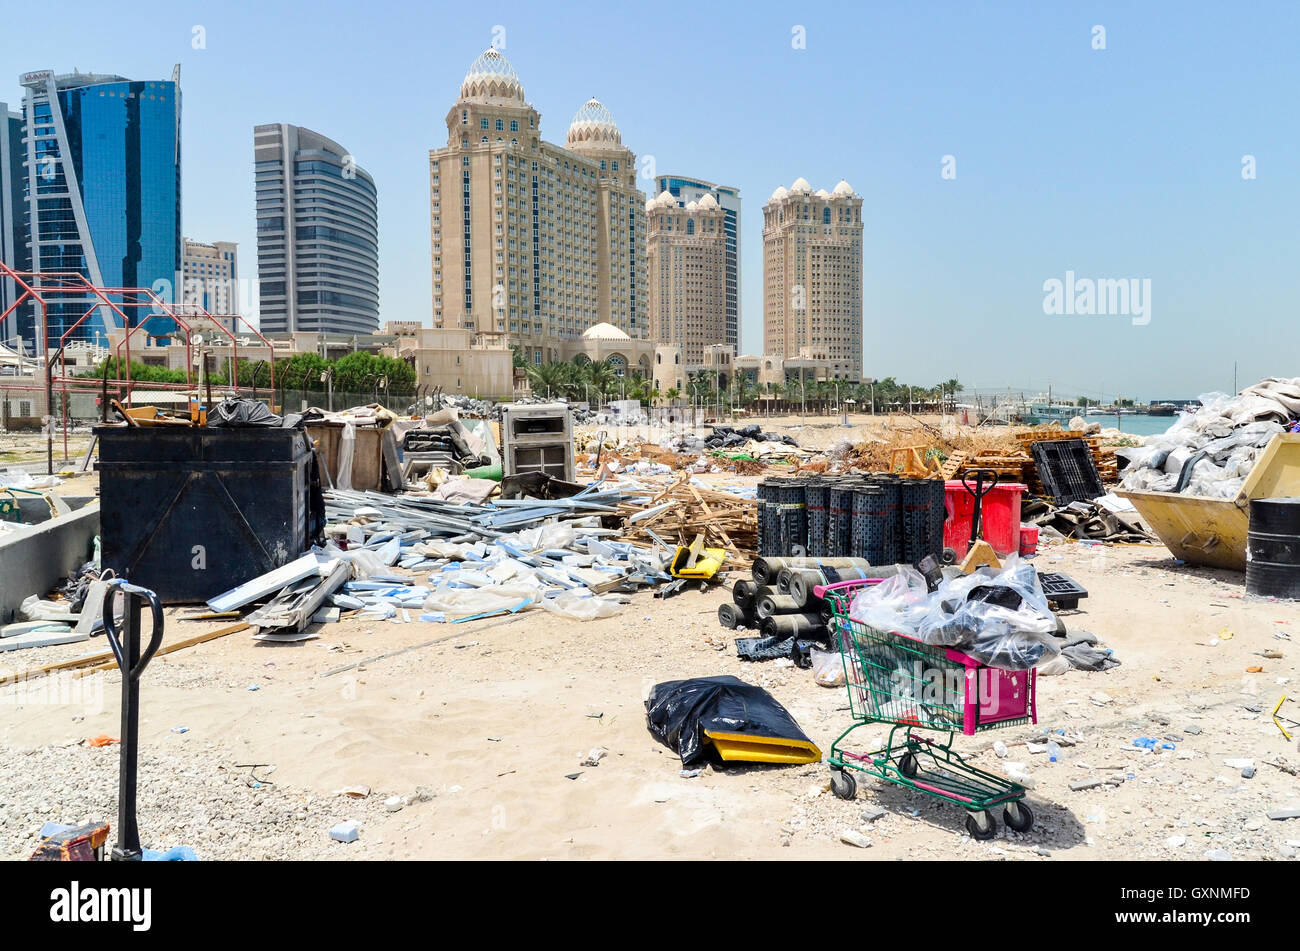 Corbeille sur la plage, dans le quartier financier de West Bay, Doha, Qatar Banque D'Images